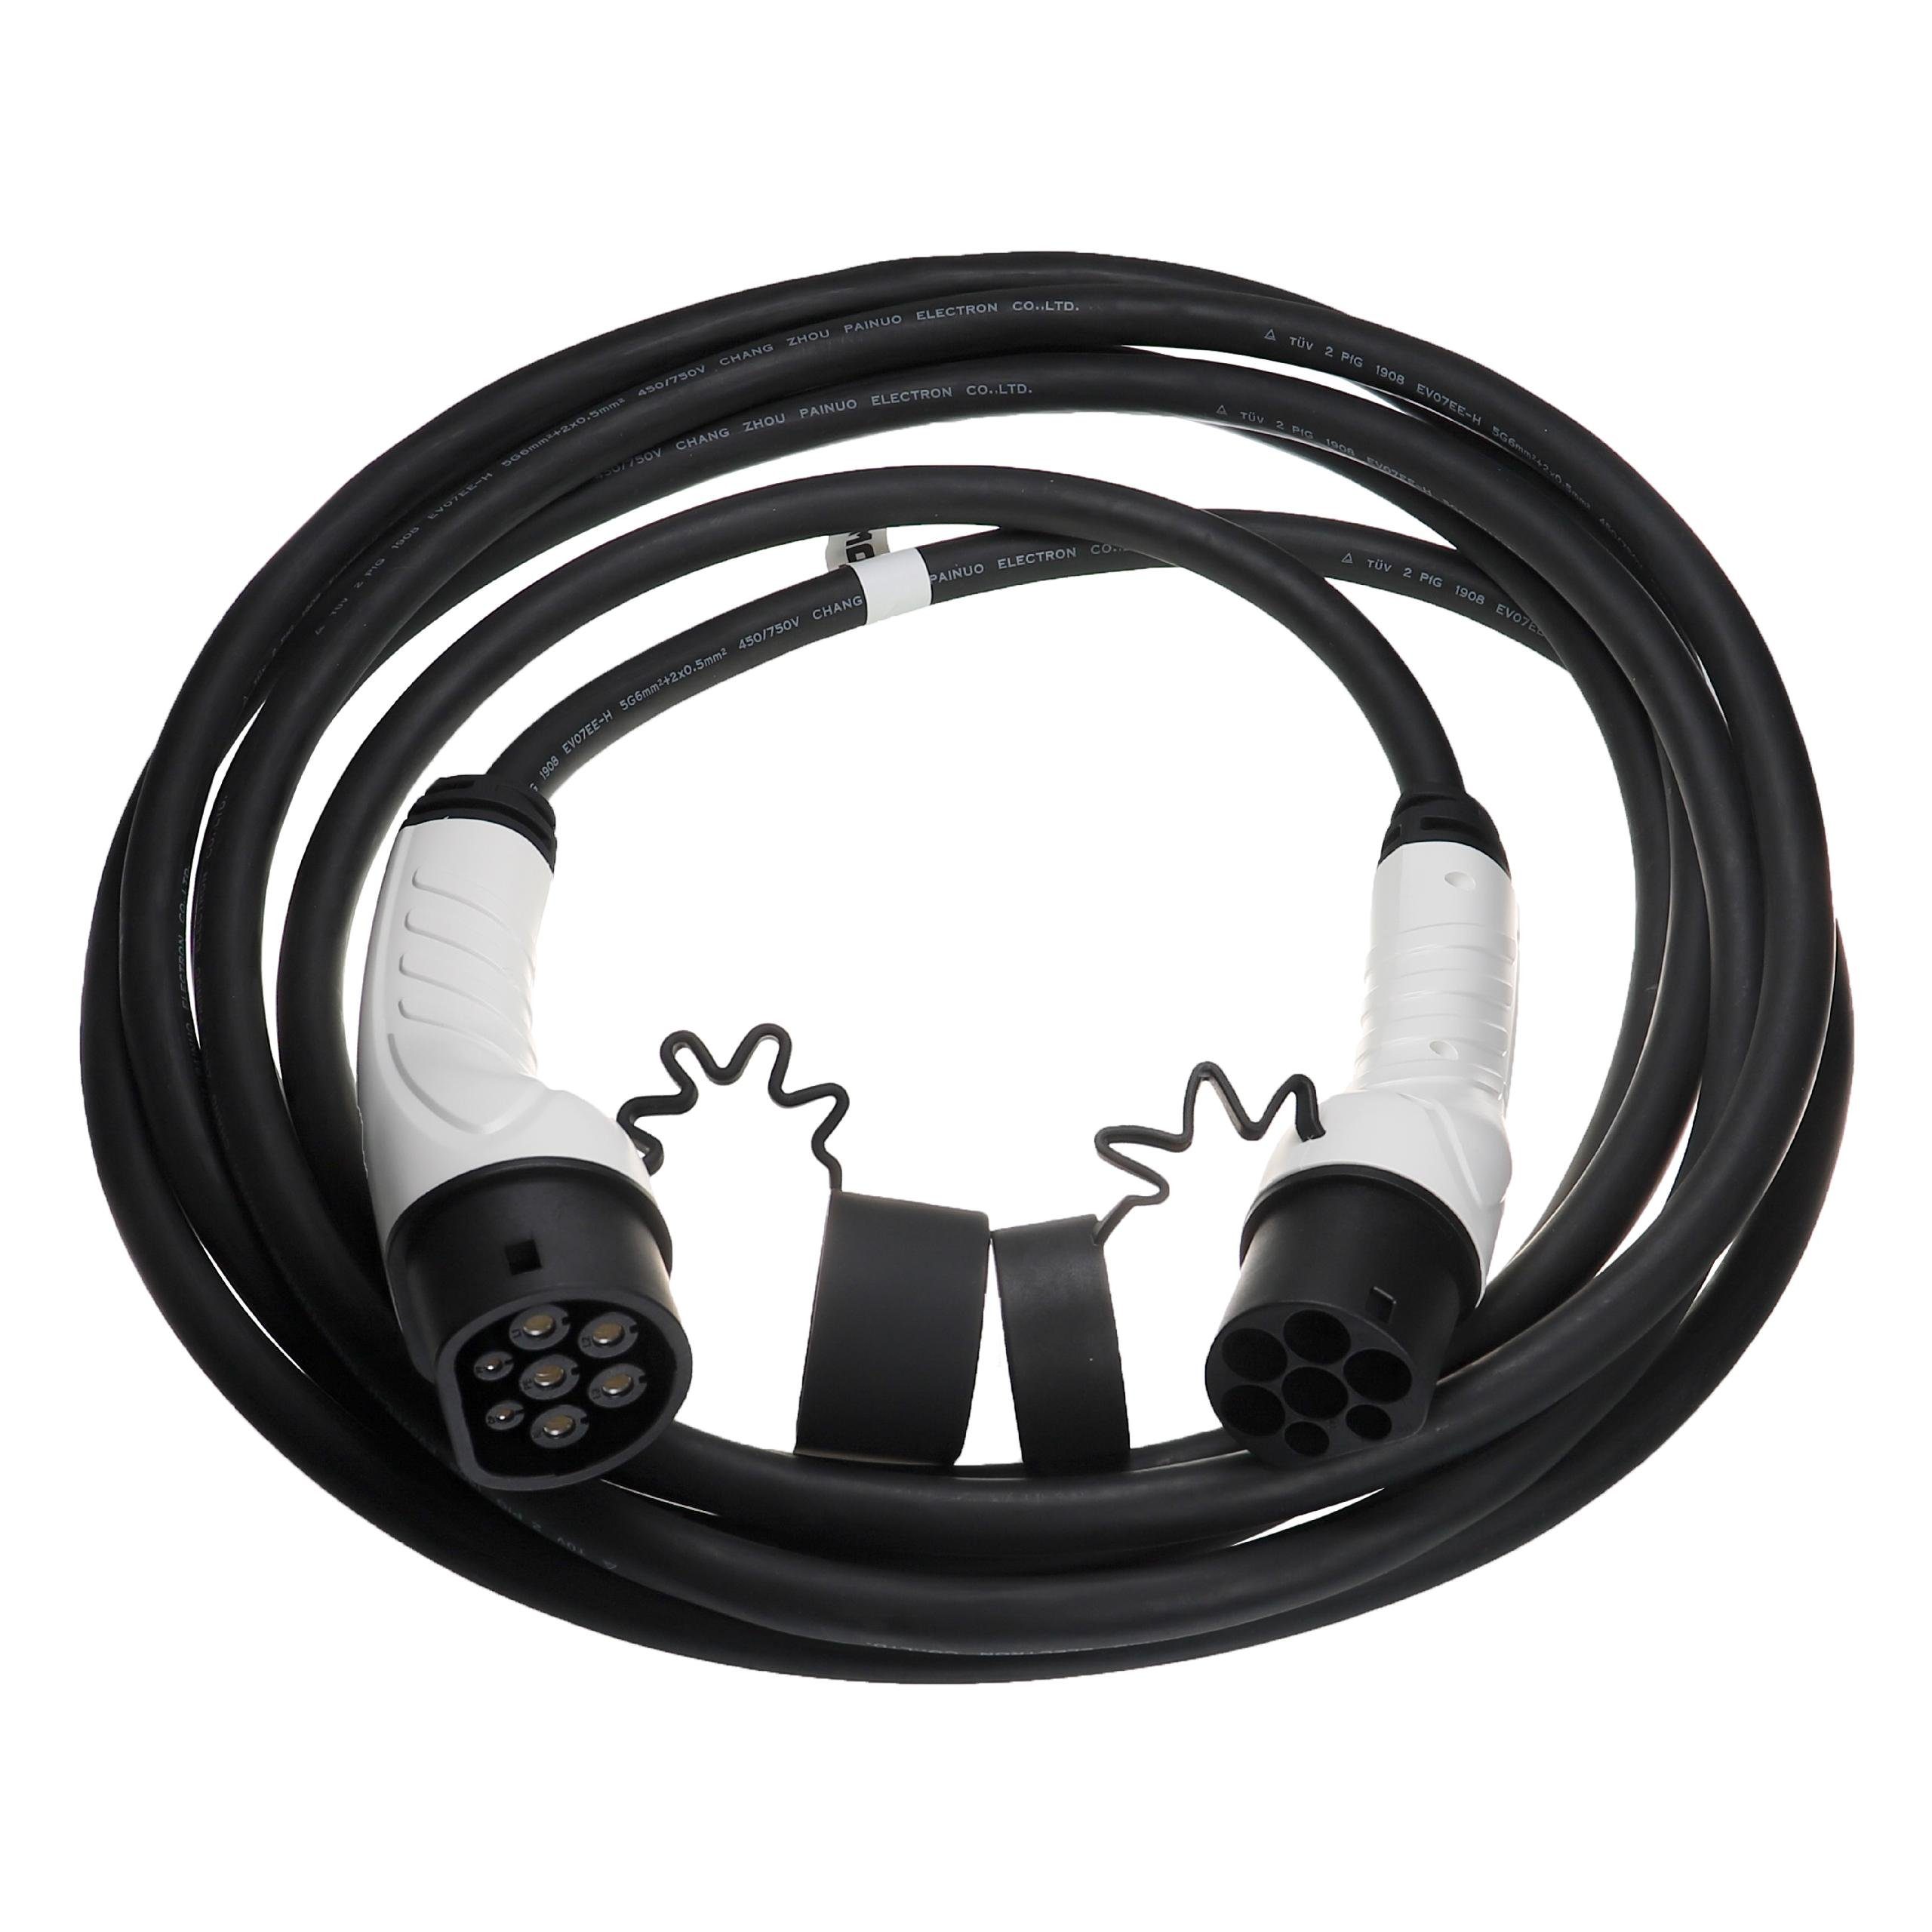 Plug-in-Hybrid e-Spacetourer passend Elektro-Kabel / vhbw Elektroauto Citroen für